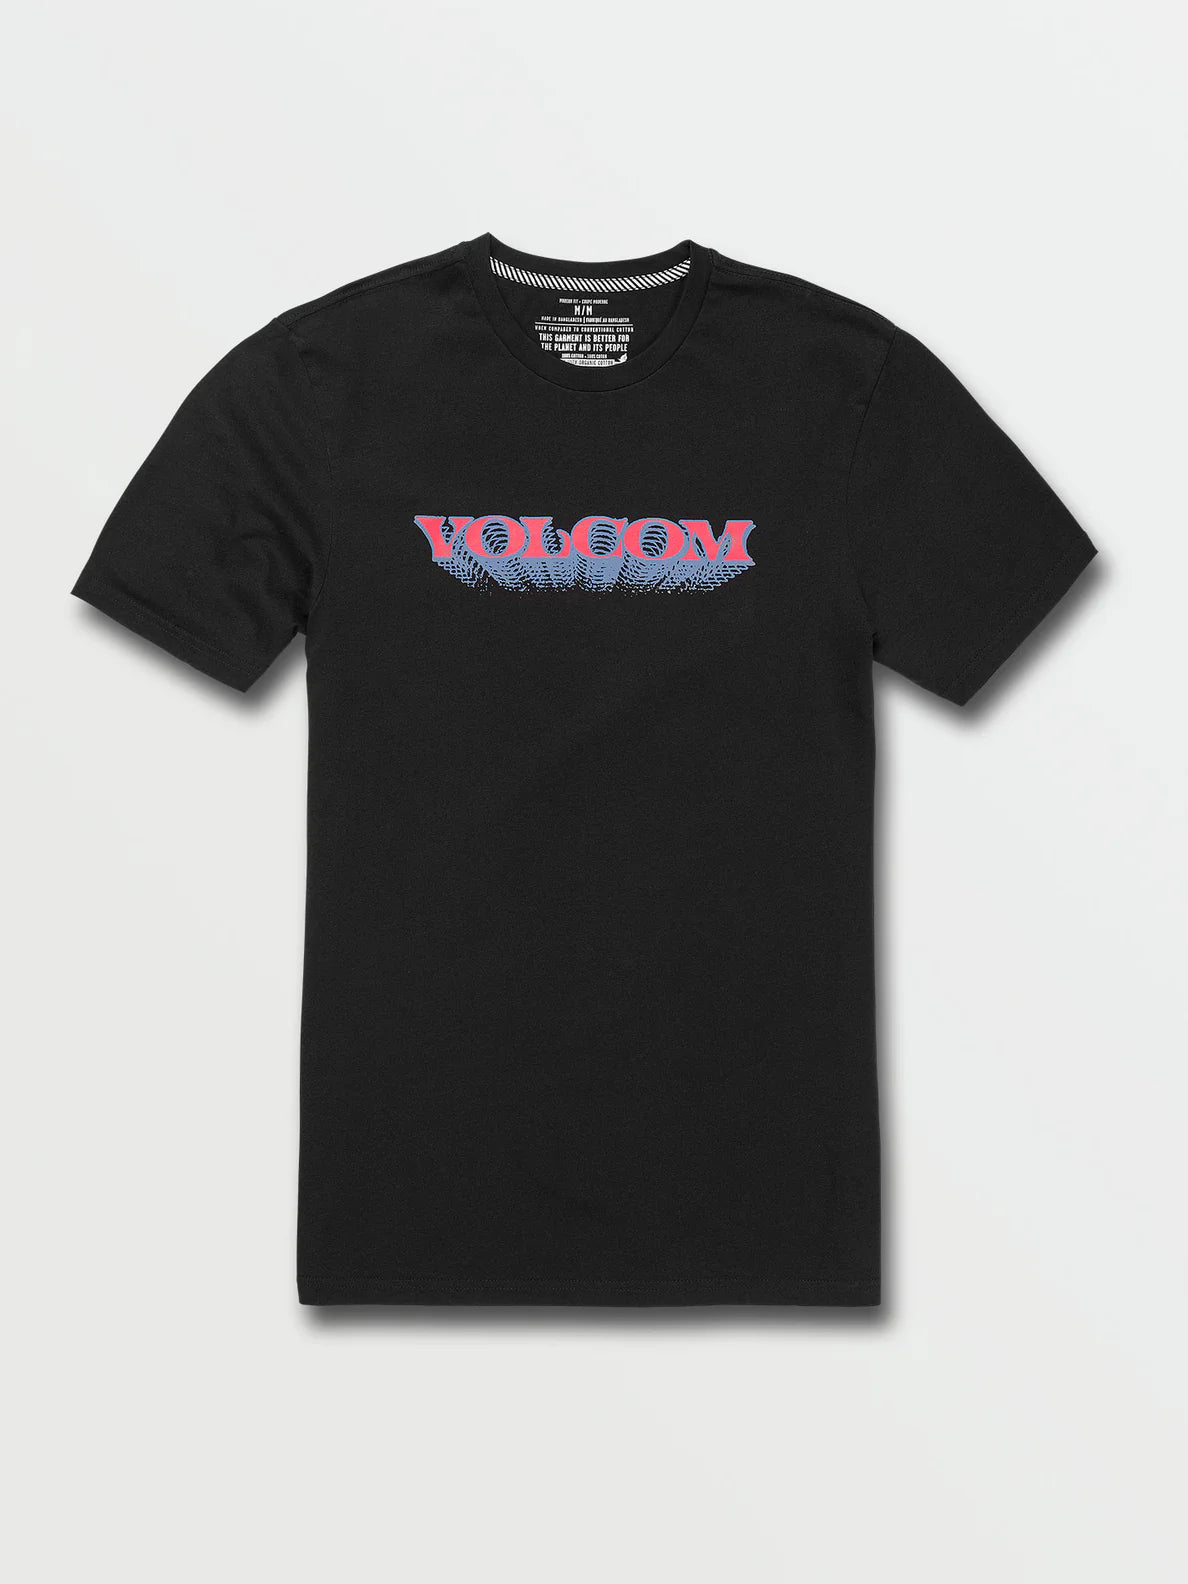 Volcom Holograph Schwarzes T-Shirt | Meistverkaufte Produkte | Neue Produkte | Neueste Produkte | surfdevils.com